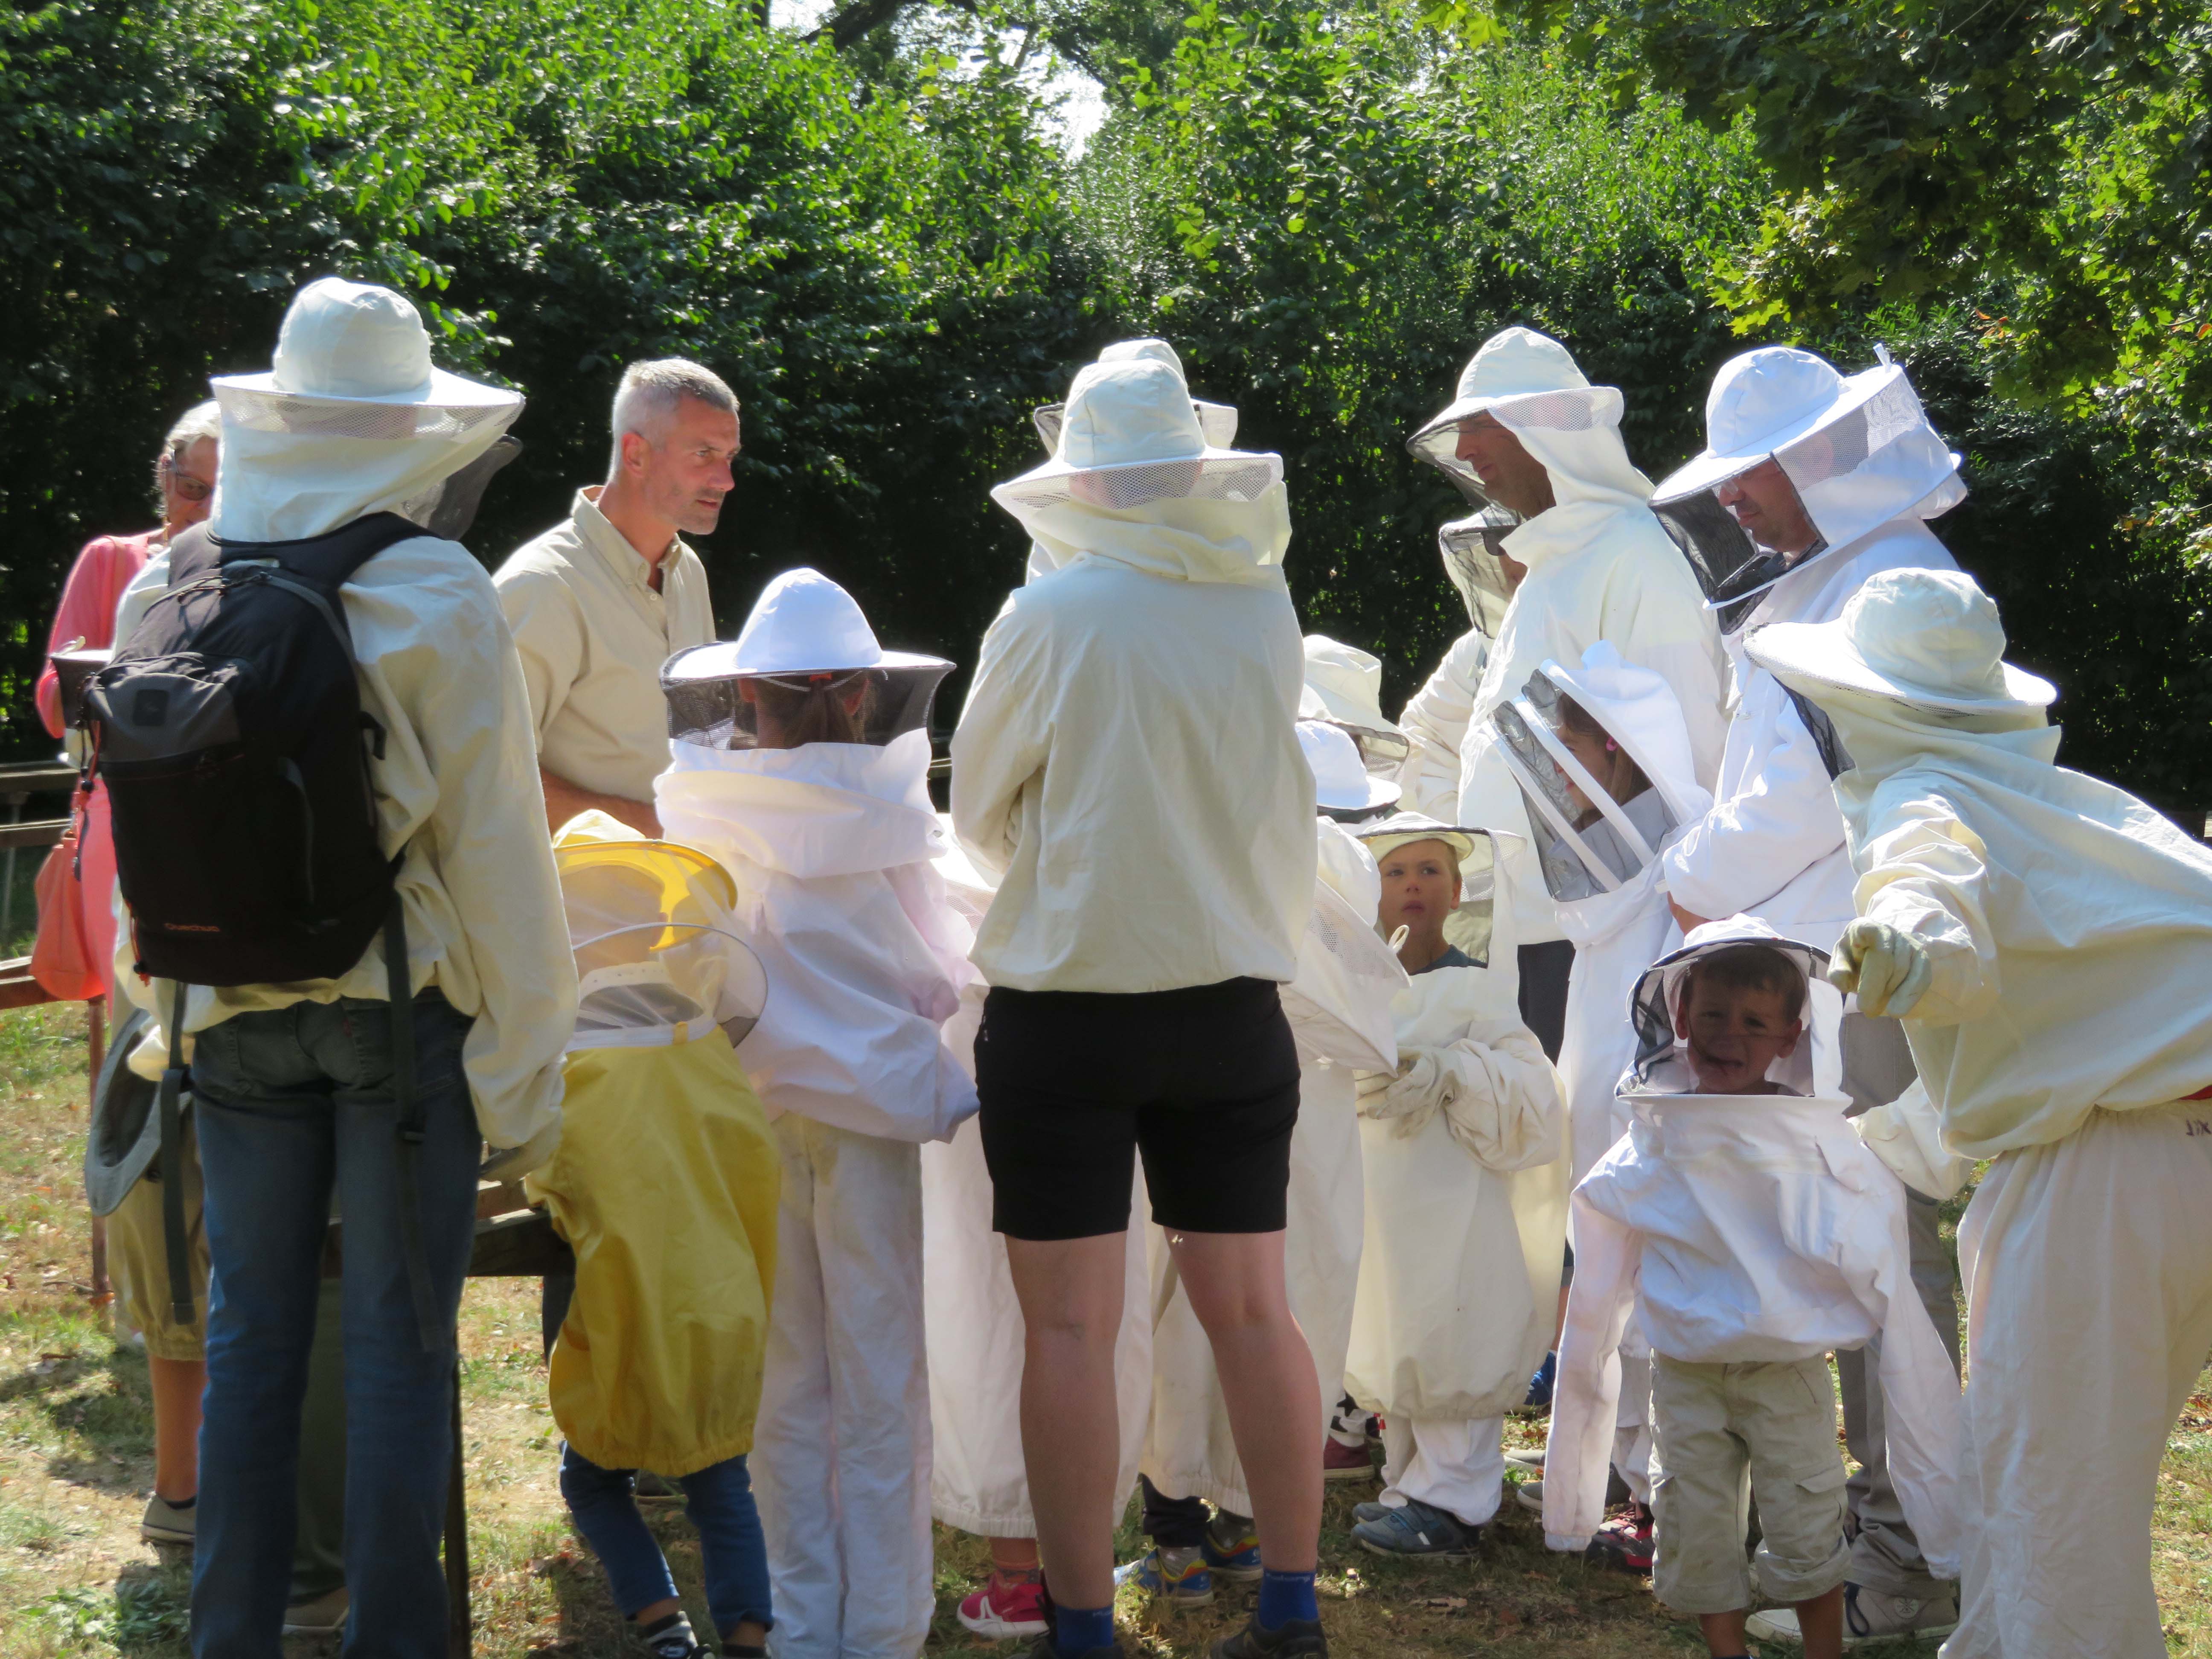 Groupe en habits d'apiculteurs lors de la fête du miel et de la nature à l'Aquascope de Virelles